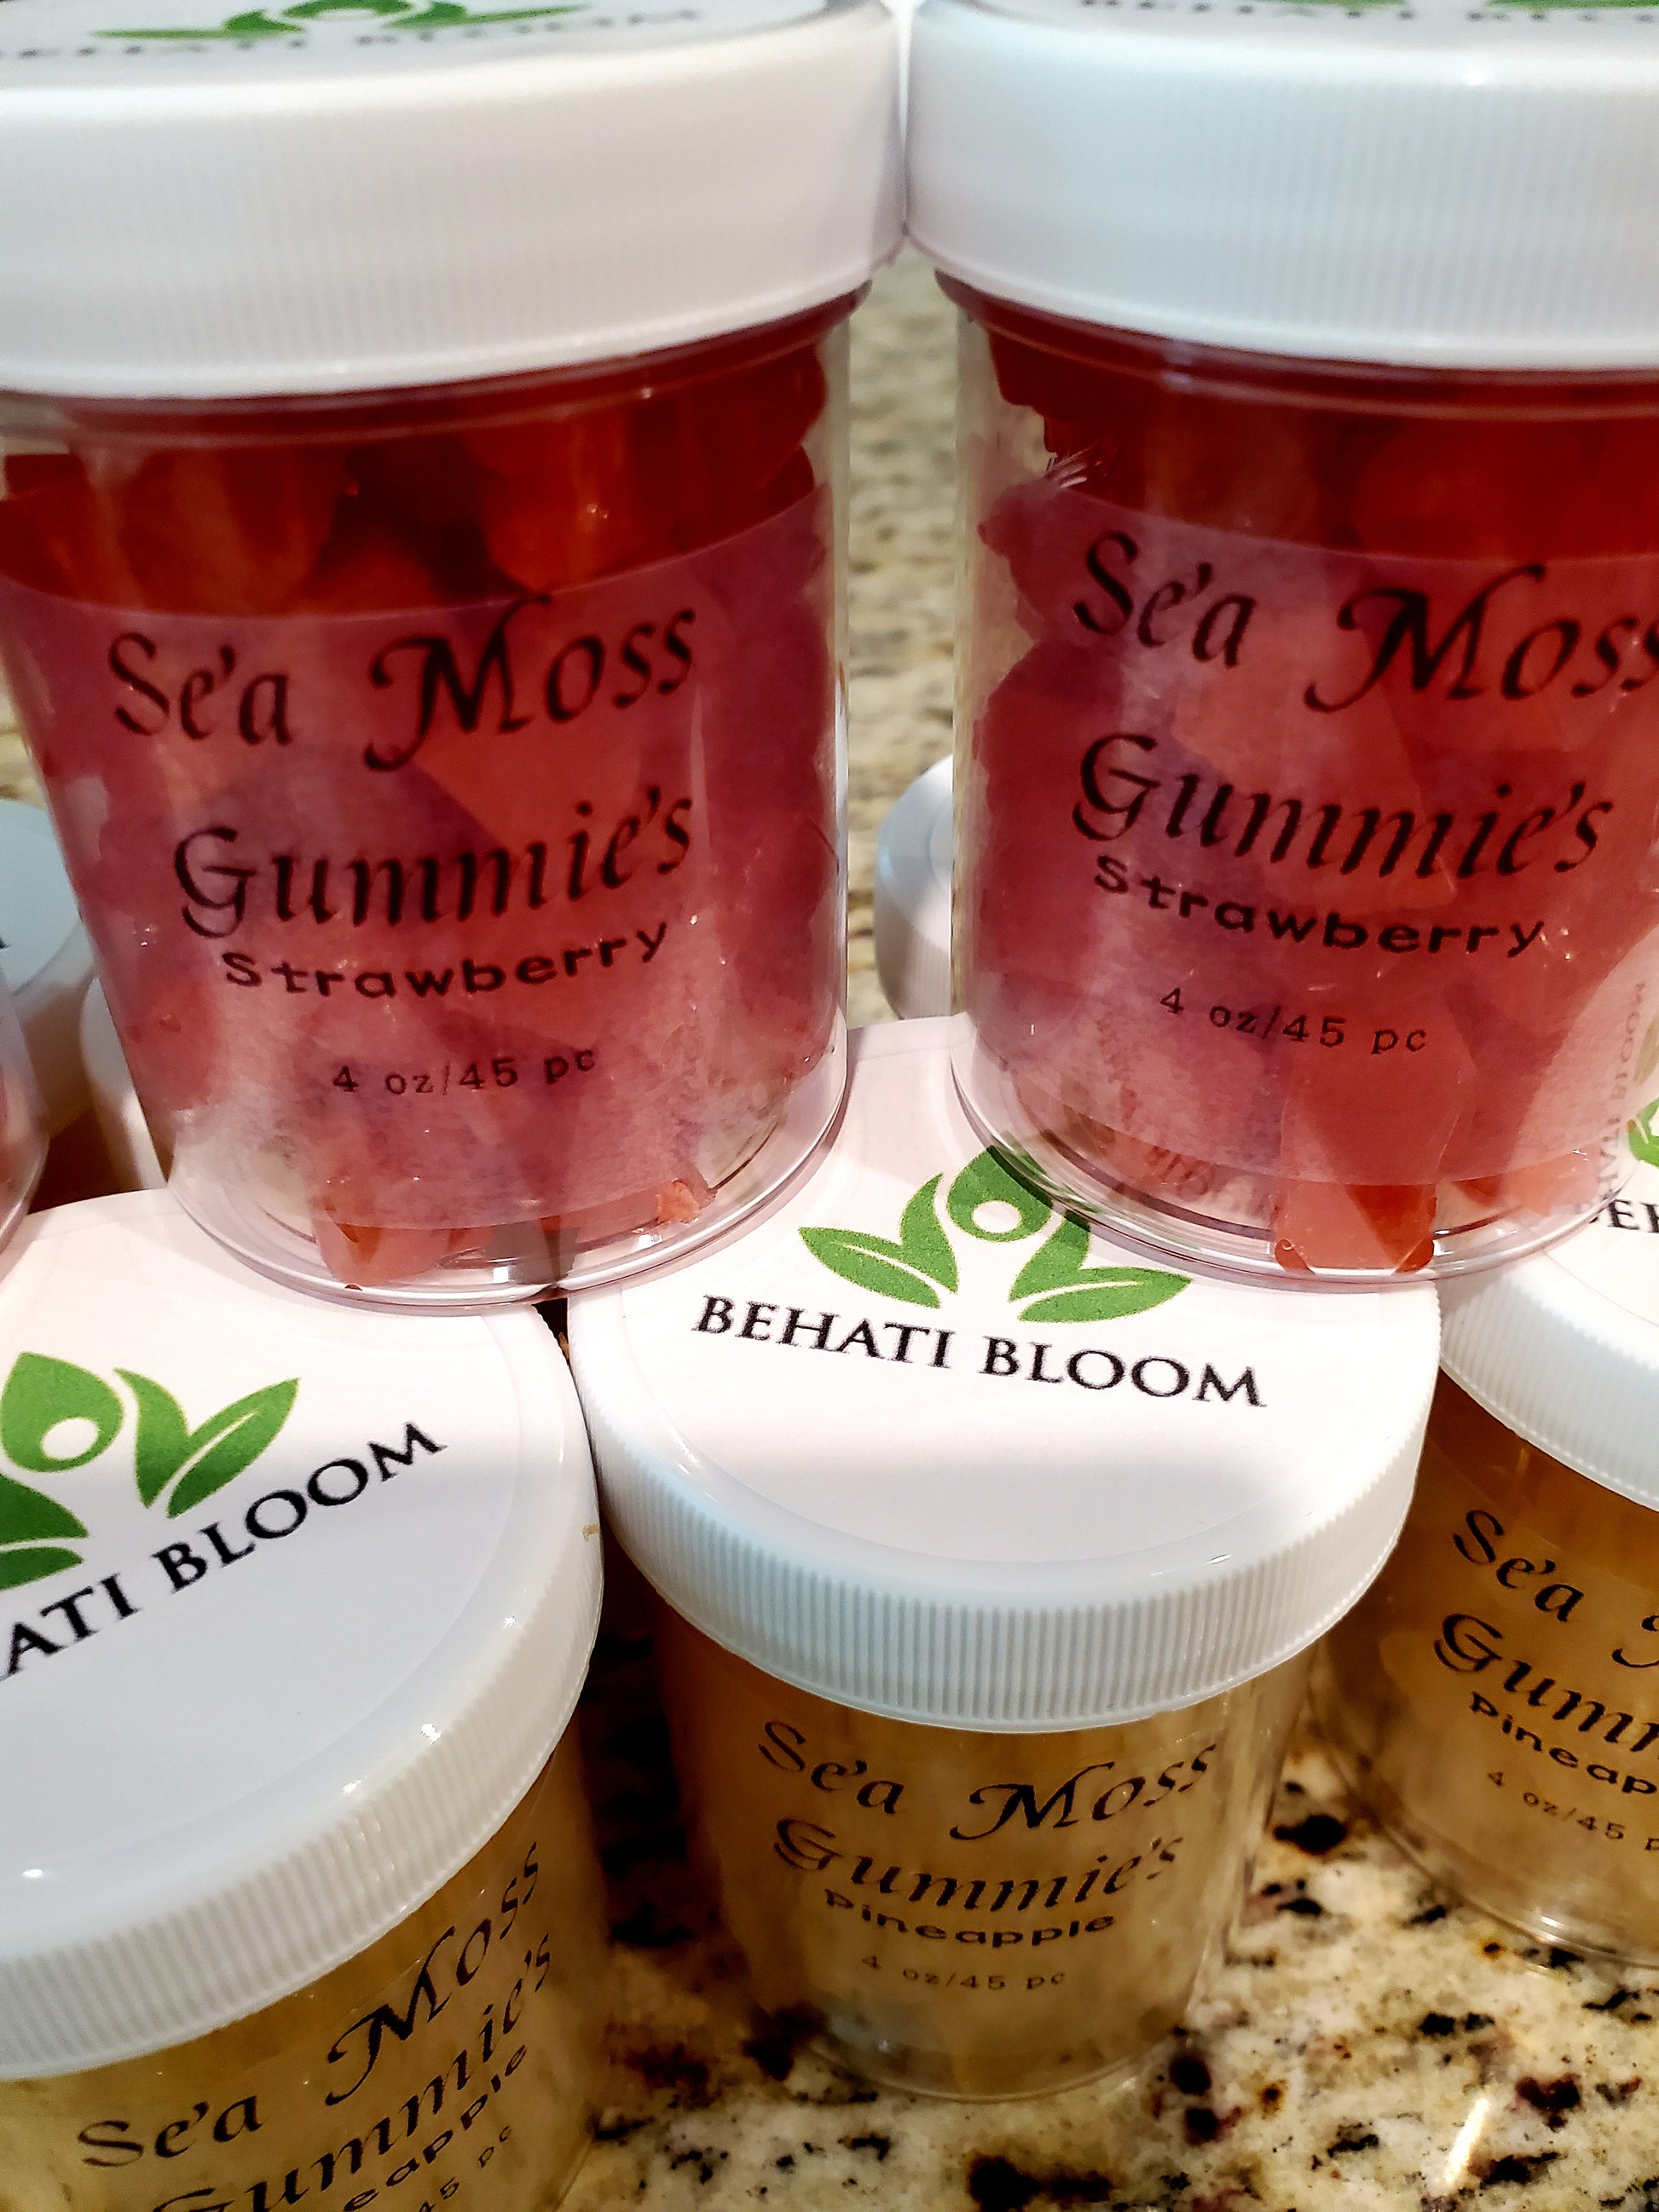 Flavored Sea Moss Gel – BEHATI BLOOM